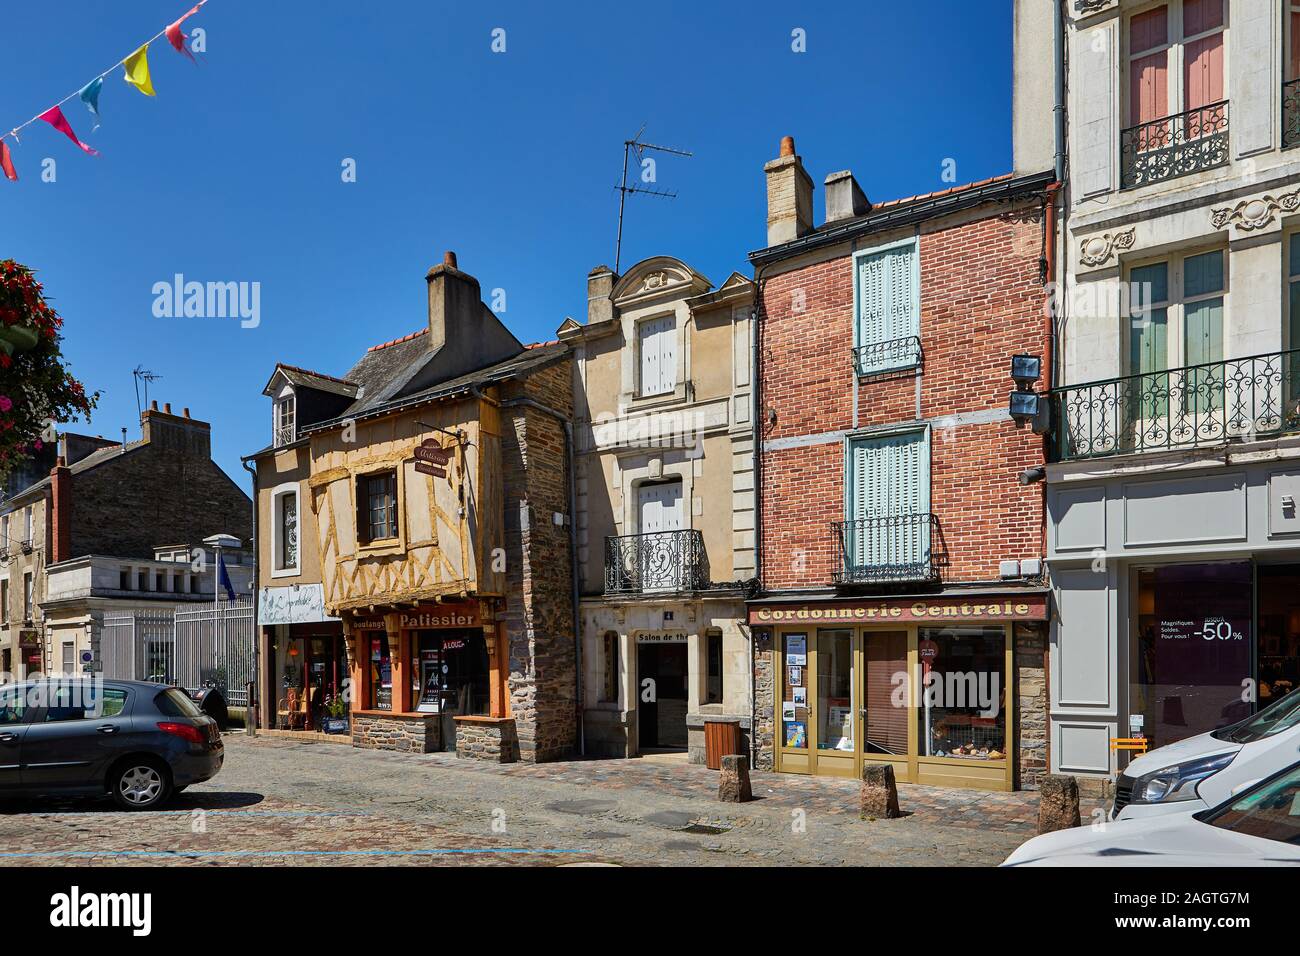 Image de Redon, Bretagne, France. Redon est une destination touristique populaire dans le sud de la Bretagne avec medeval bâtiments, commerces, gare, restau Banque D'Images